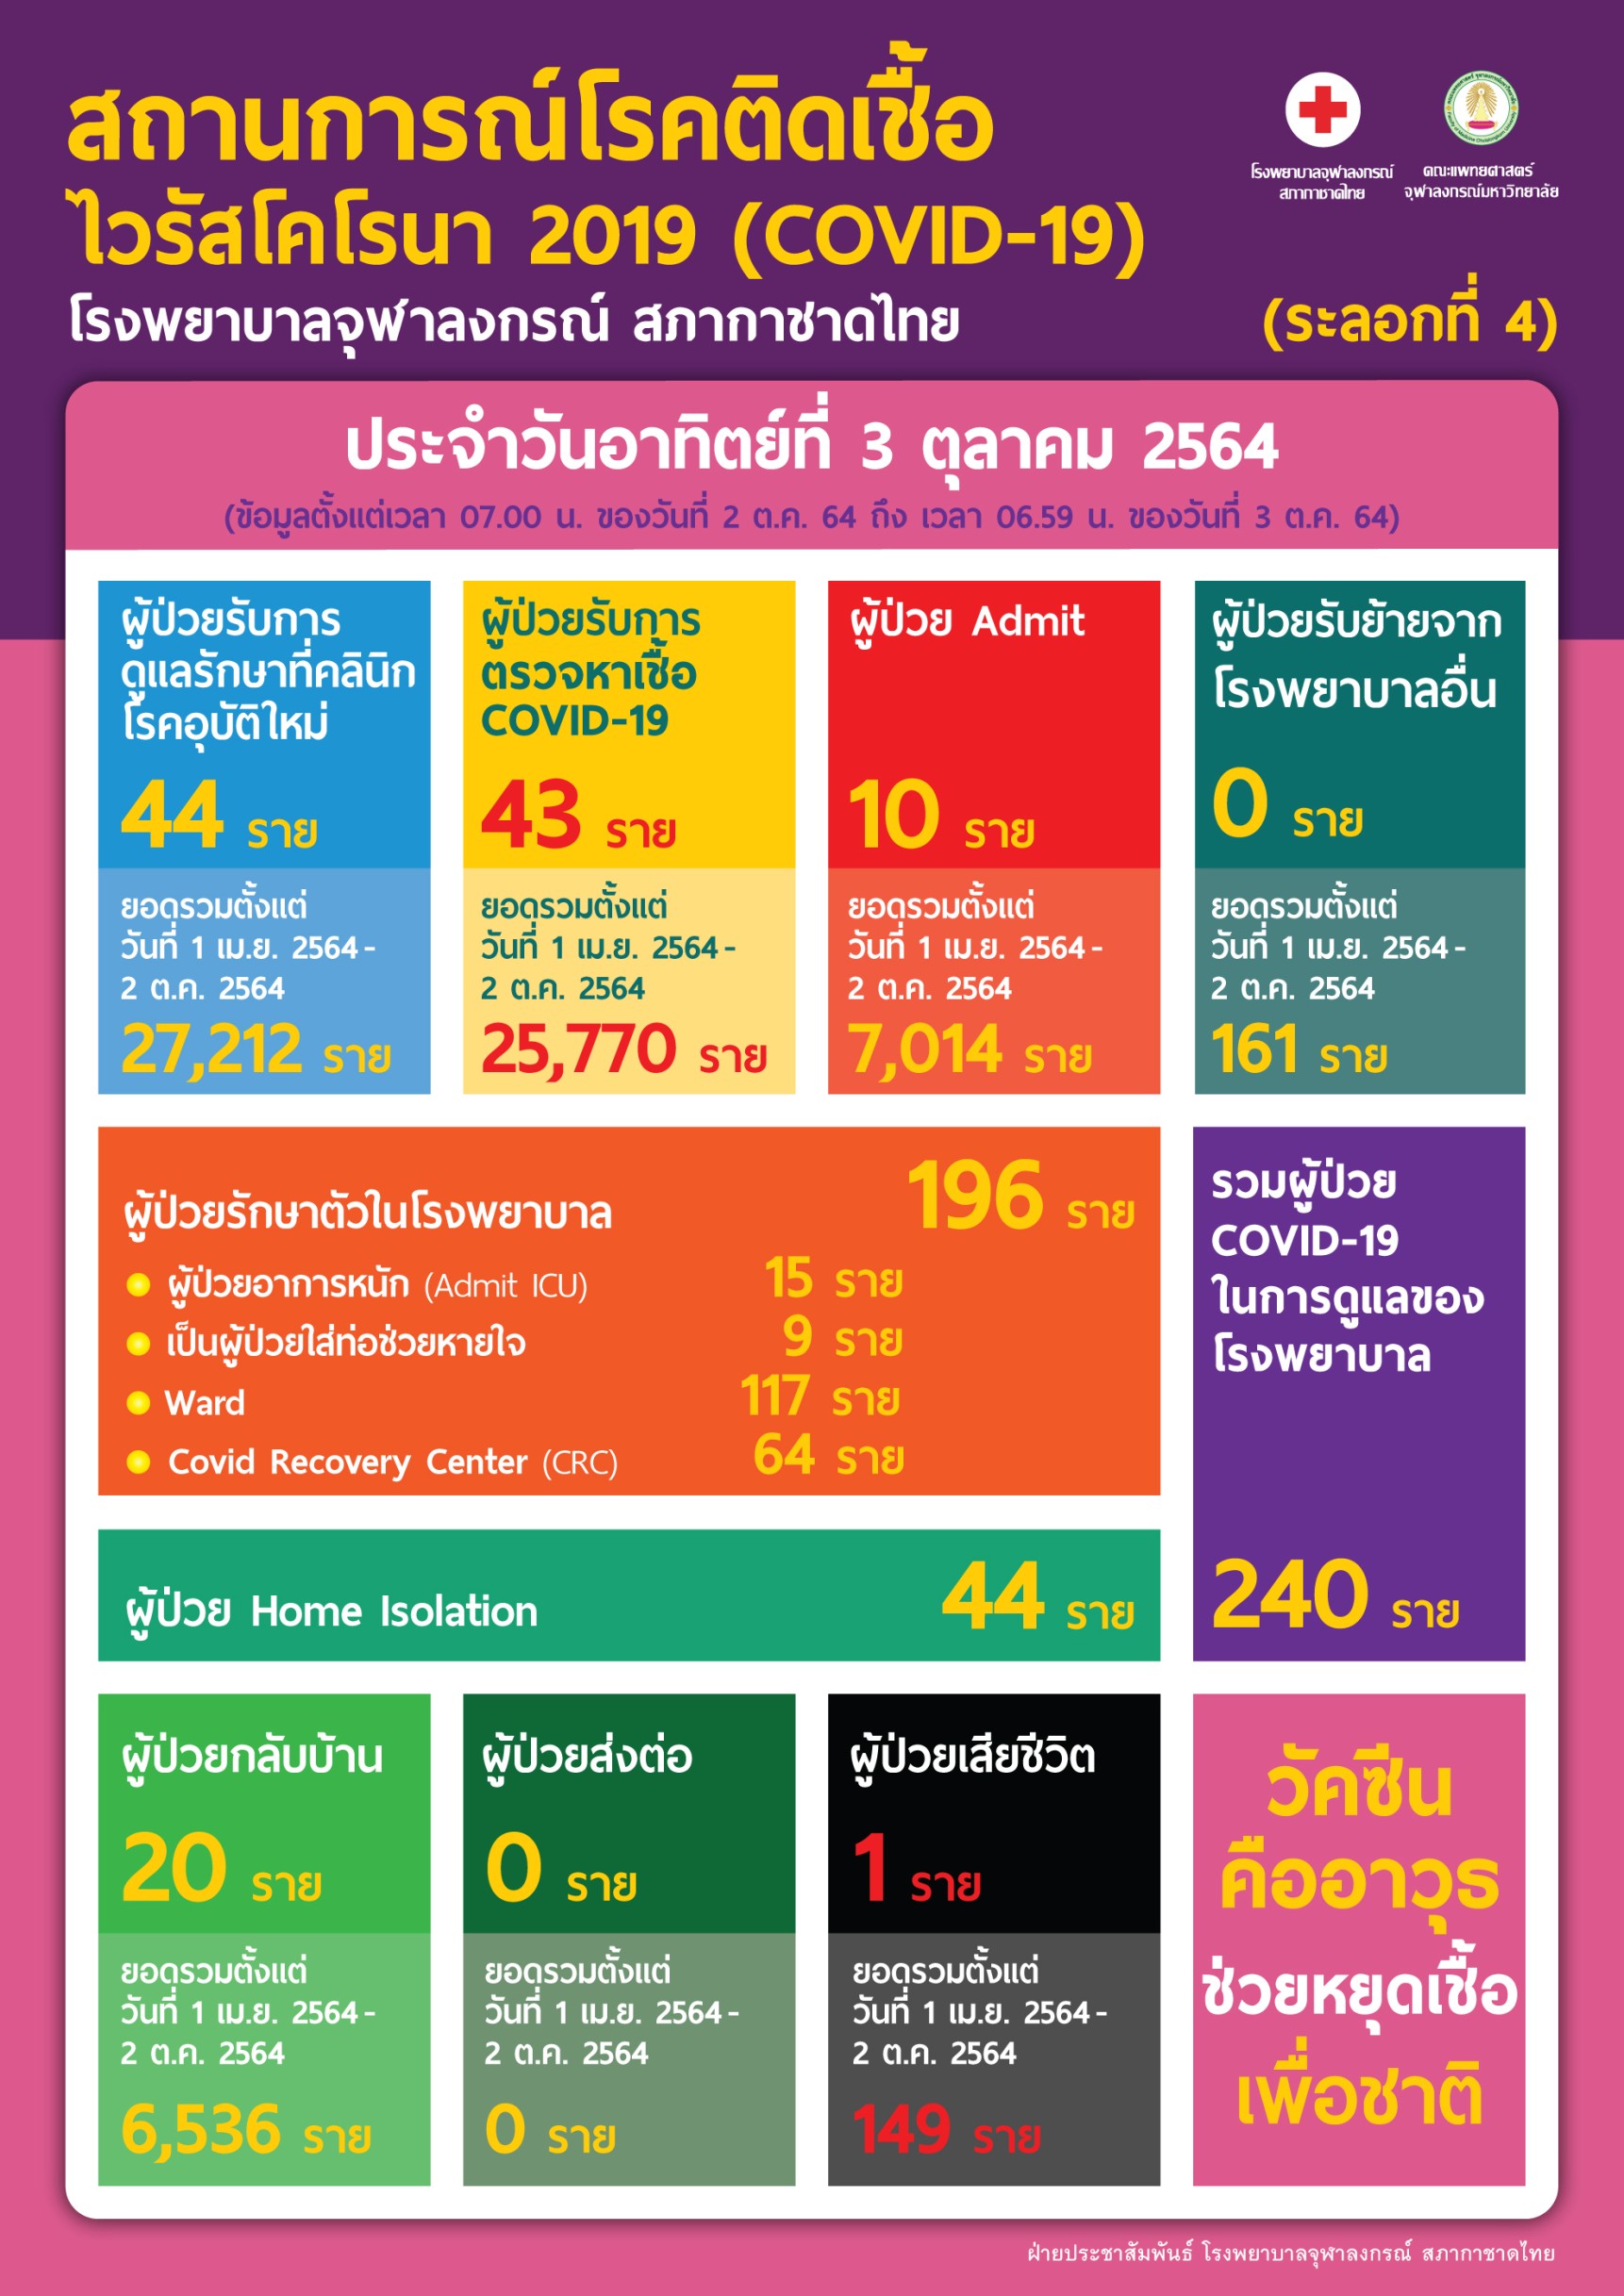 สถานการณ์โรคติดเชื้อไวรัสโคโรนา 2019 (COVID-19) (ระลอกที่ 4) โรงพยาบาลจุฬาลงกรณ์ สภากาชาดไทย ประจำวันอาทิตย์ที่ 3 ตุลาคม 2564